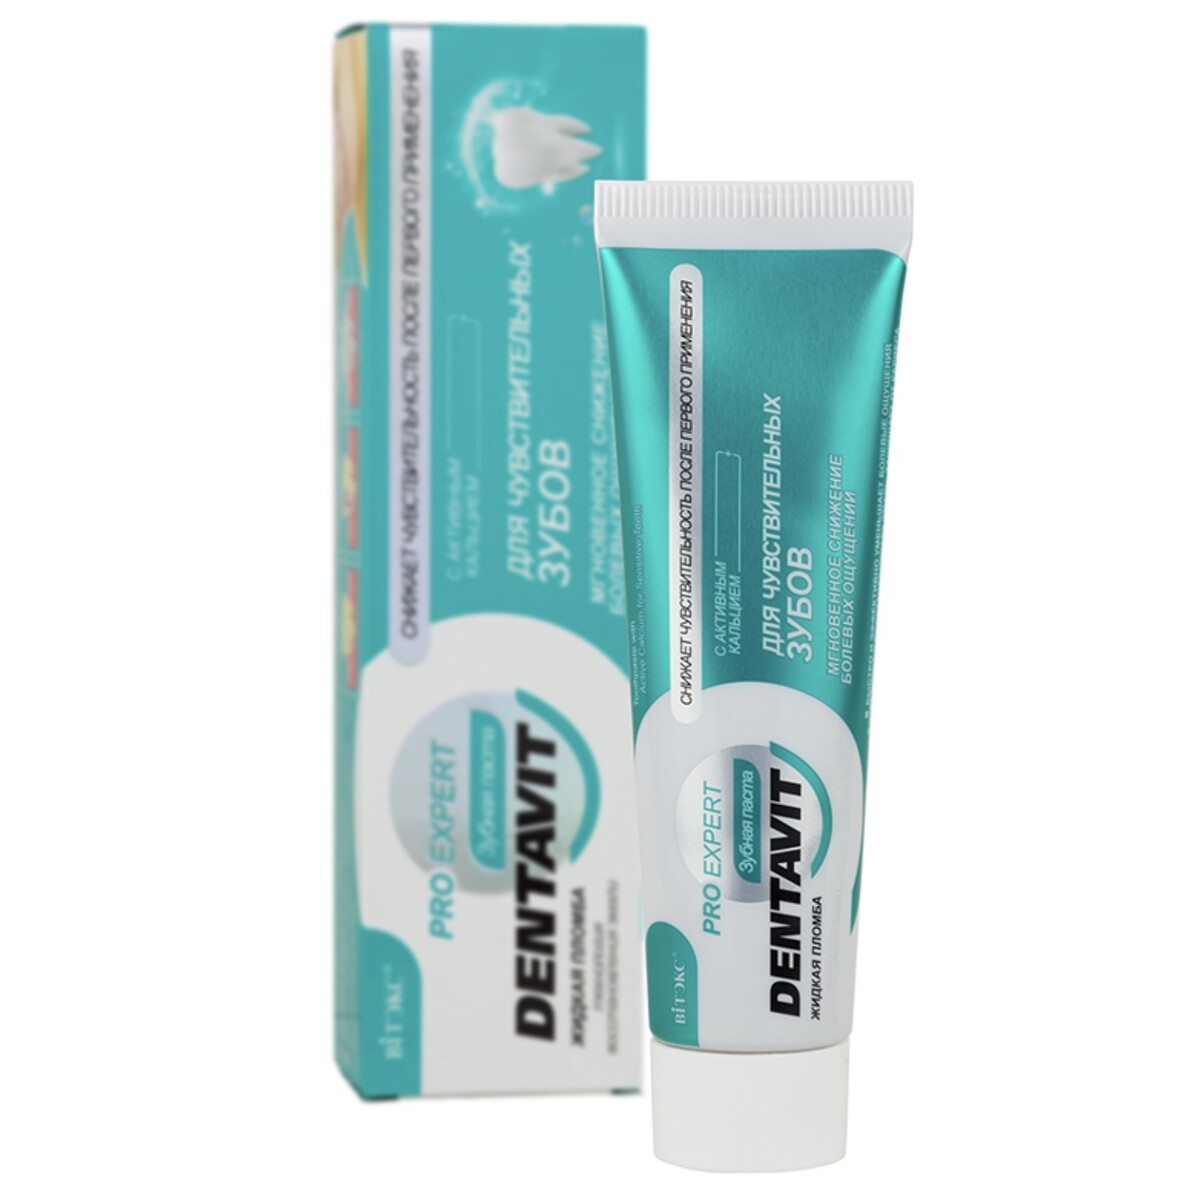 Dentavit pro expert зубная паста для чувствительных зубов с активным кальцием, 85 г.+ коробка